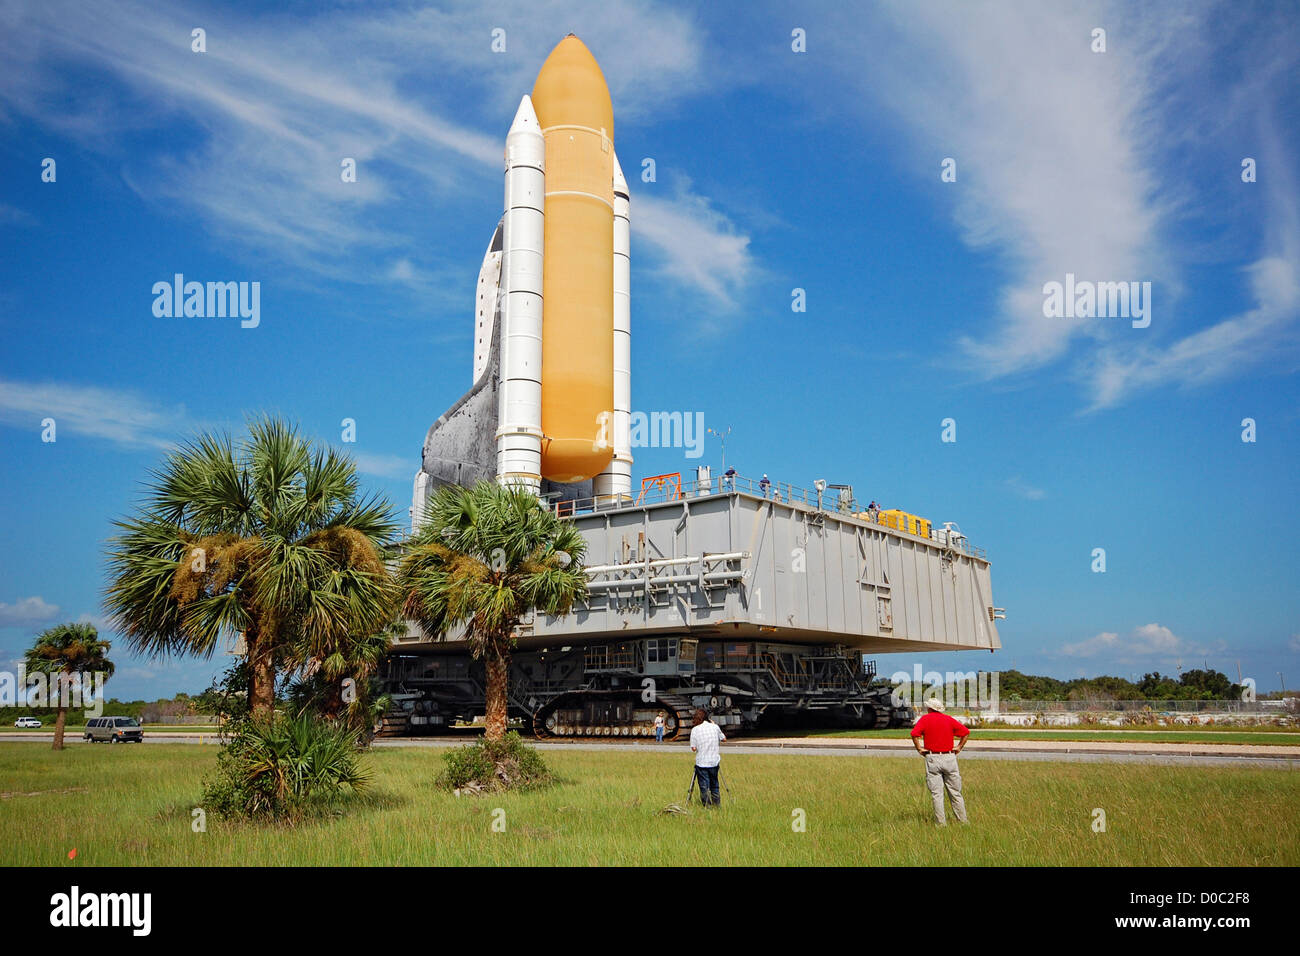 Atlantis rende 3.5 miglio sei ore di viaggio pad 39A sulla parte superiore del trasportatore a cingoli in preparazione STS-125 ultima missione Hubble Space Foto Stock